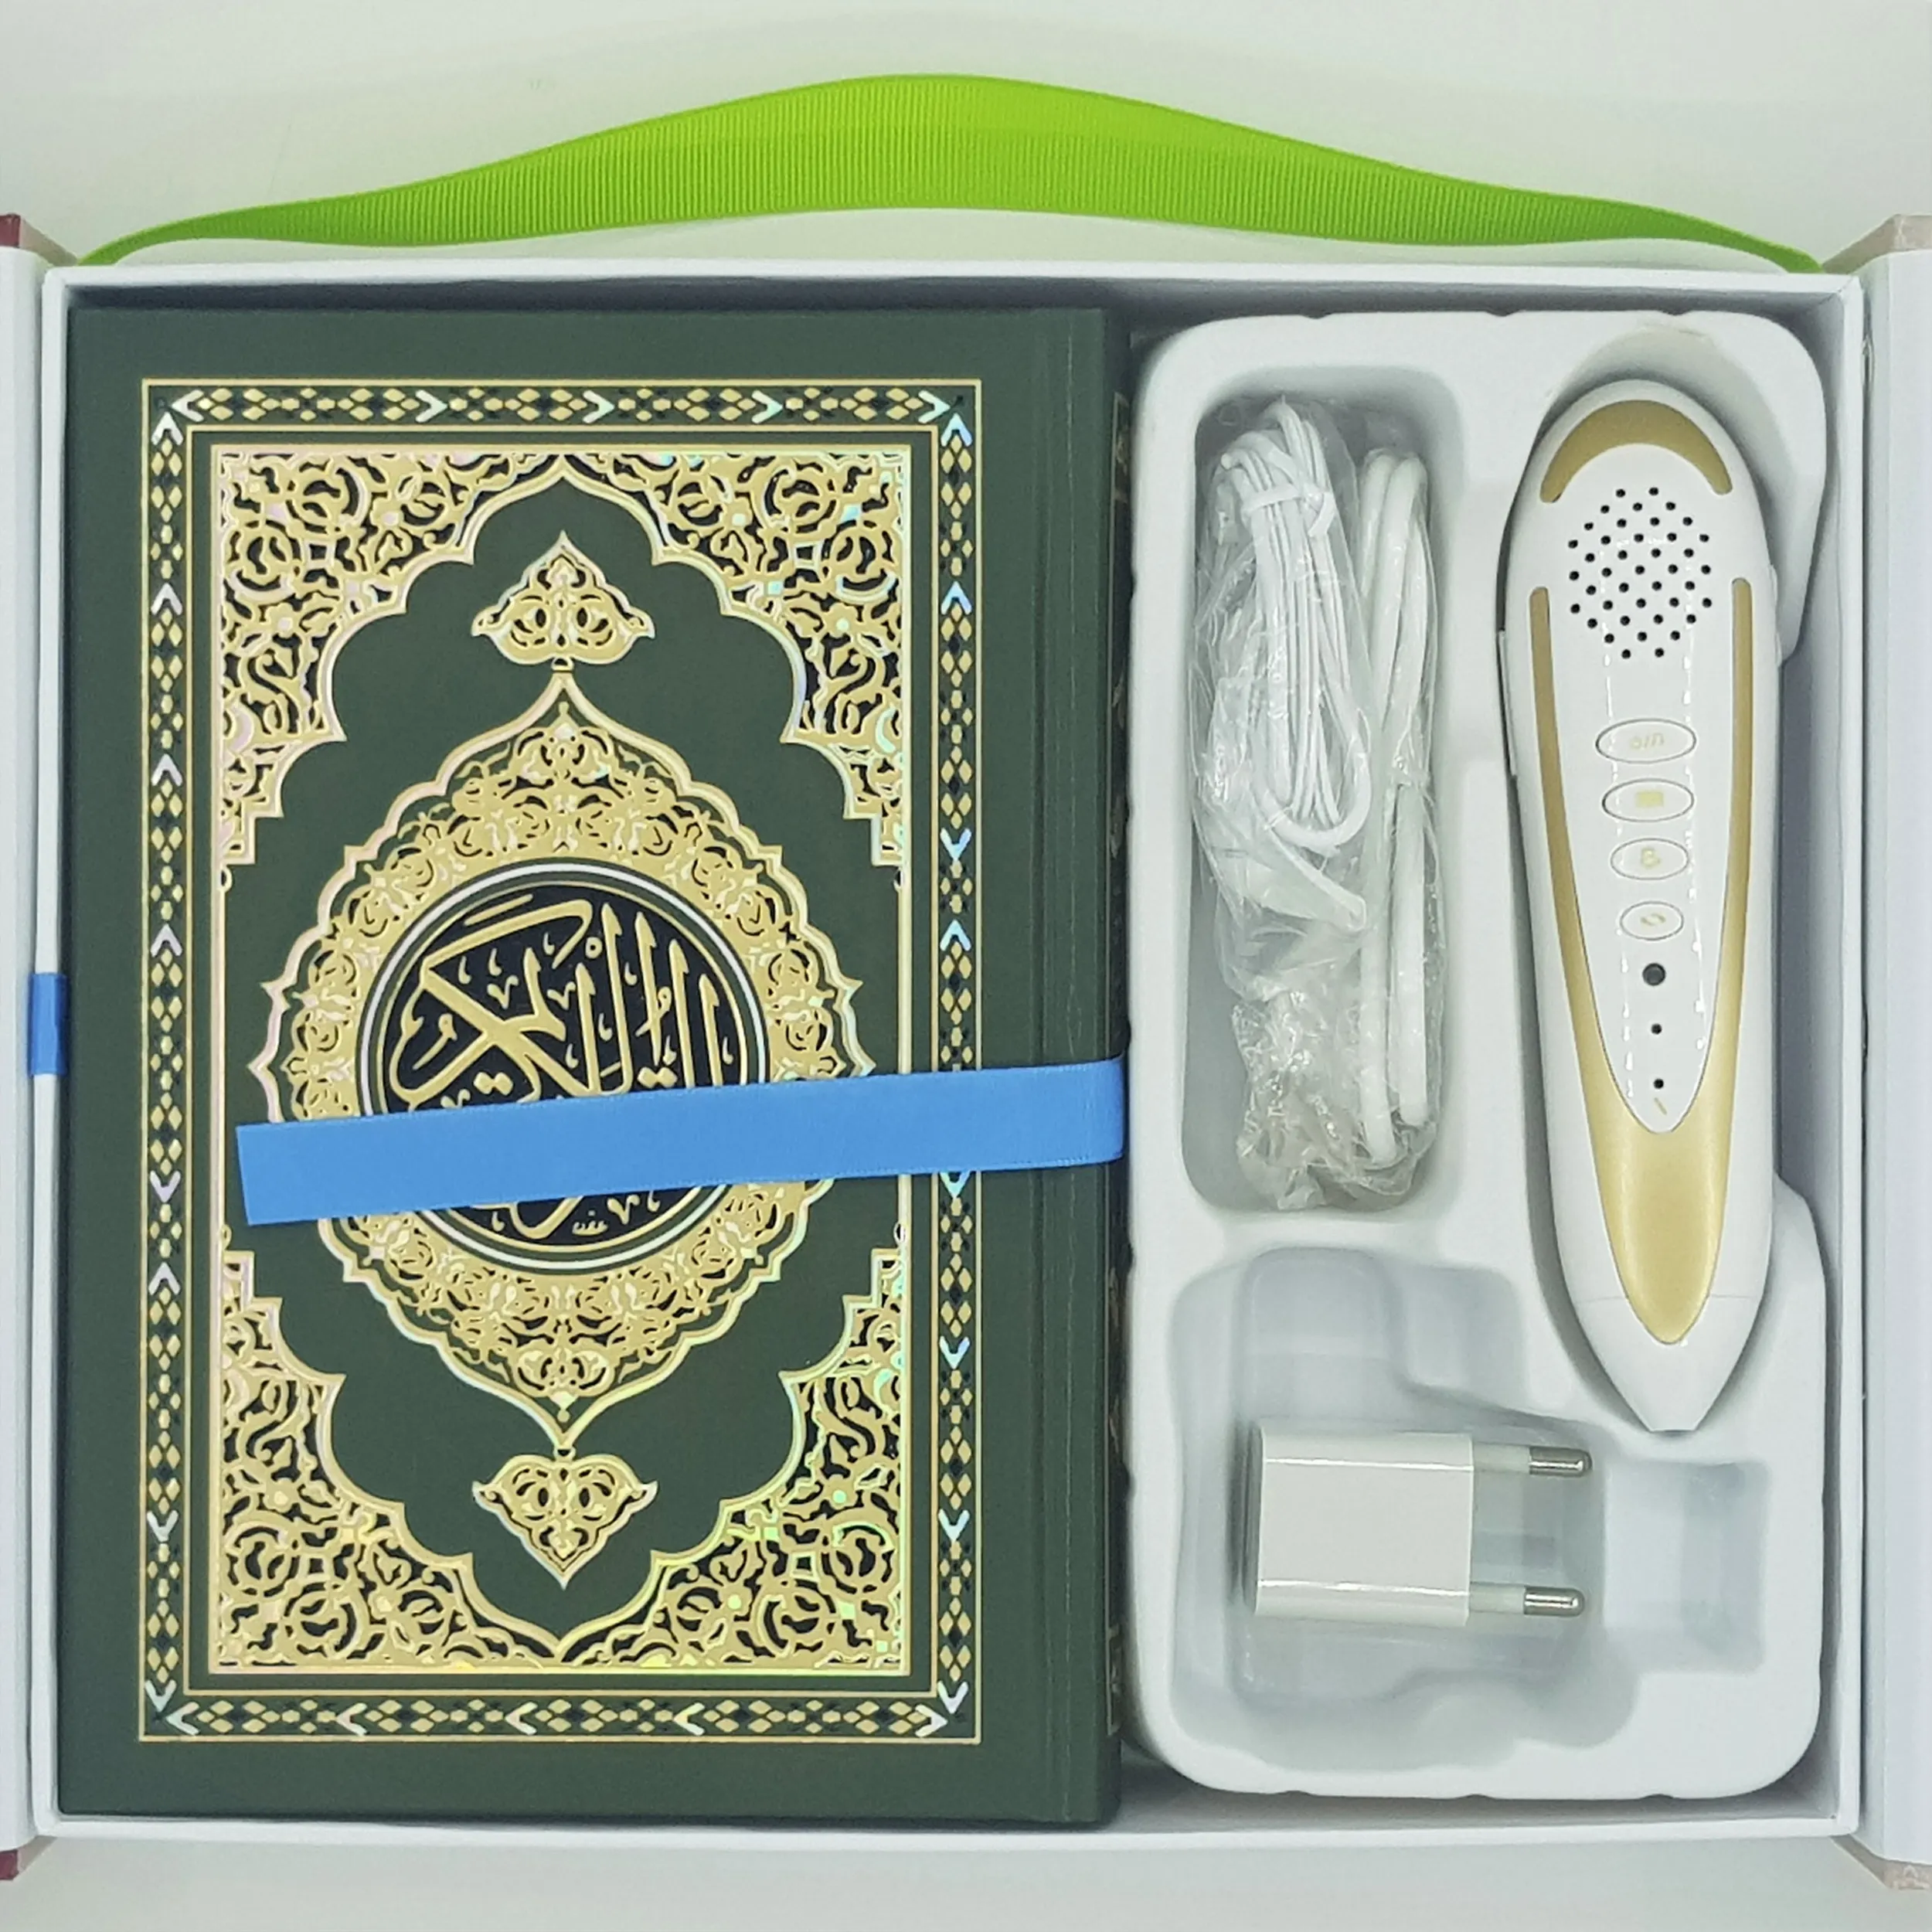 Corano ha letto la penna indonesiana, 35 voci, 28 traduzioni scatola marrone